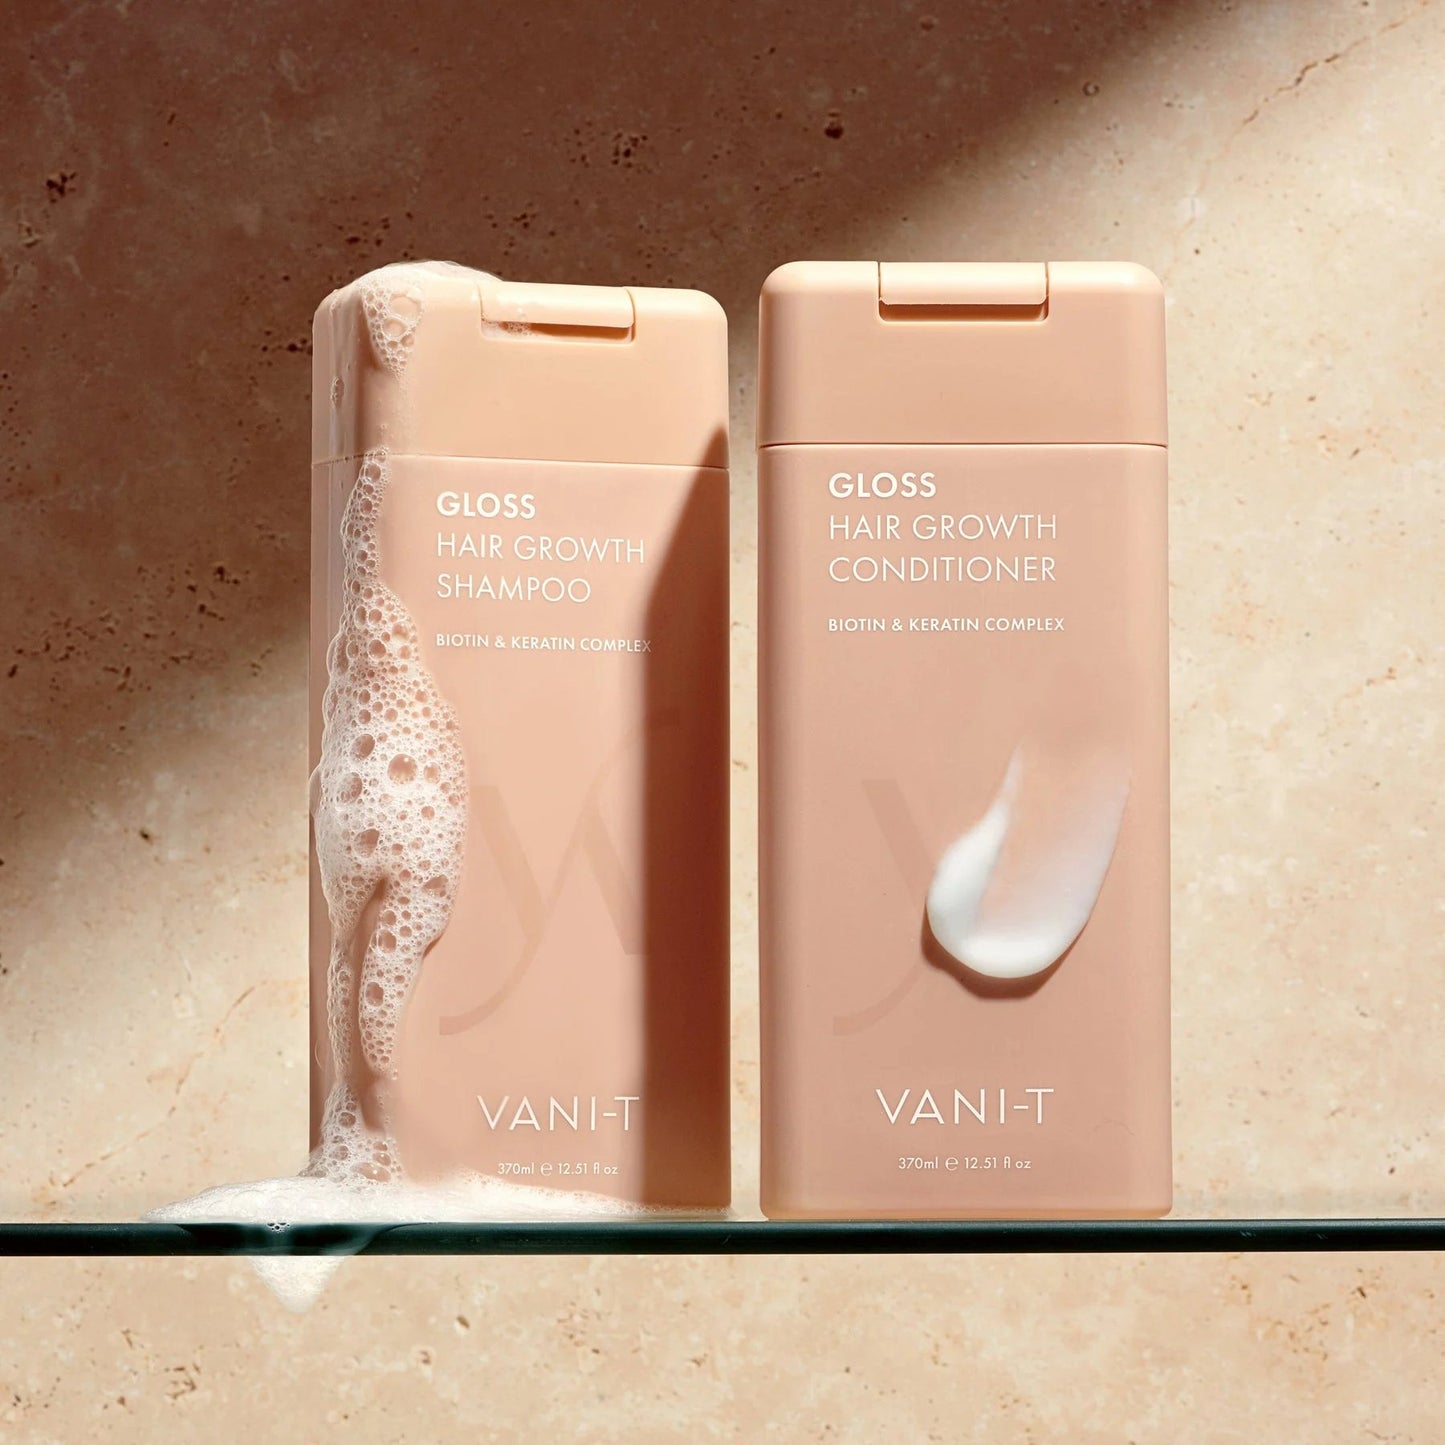 VANI-T Gloss Hair Growth Shampoo